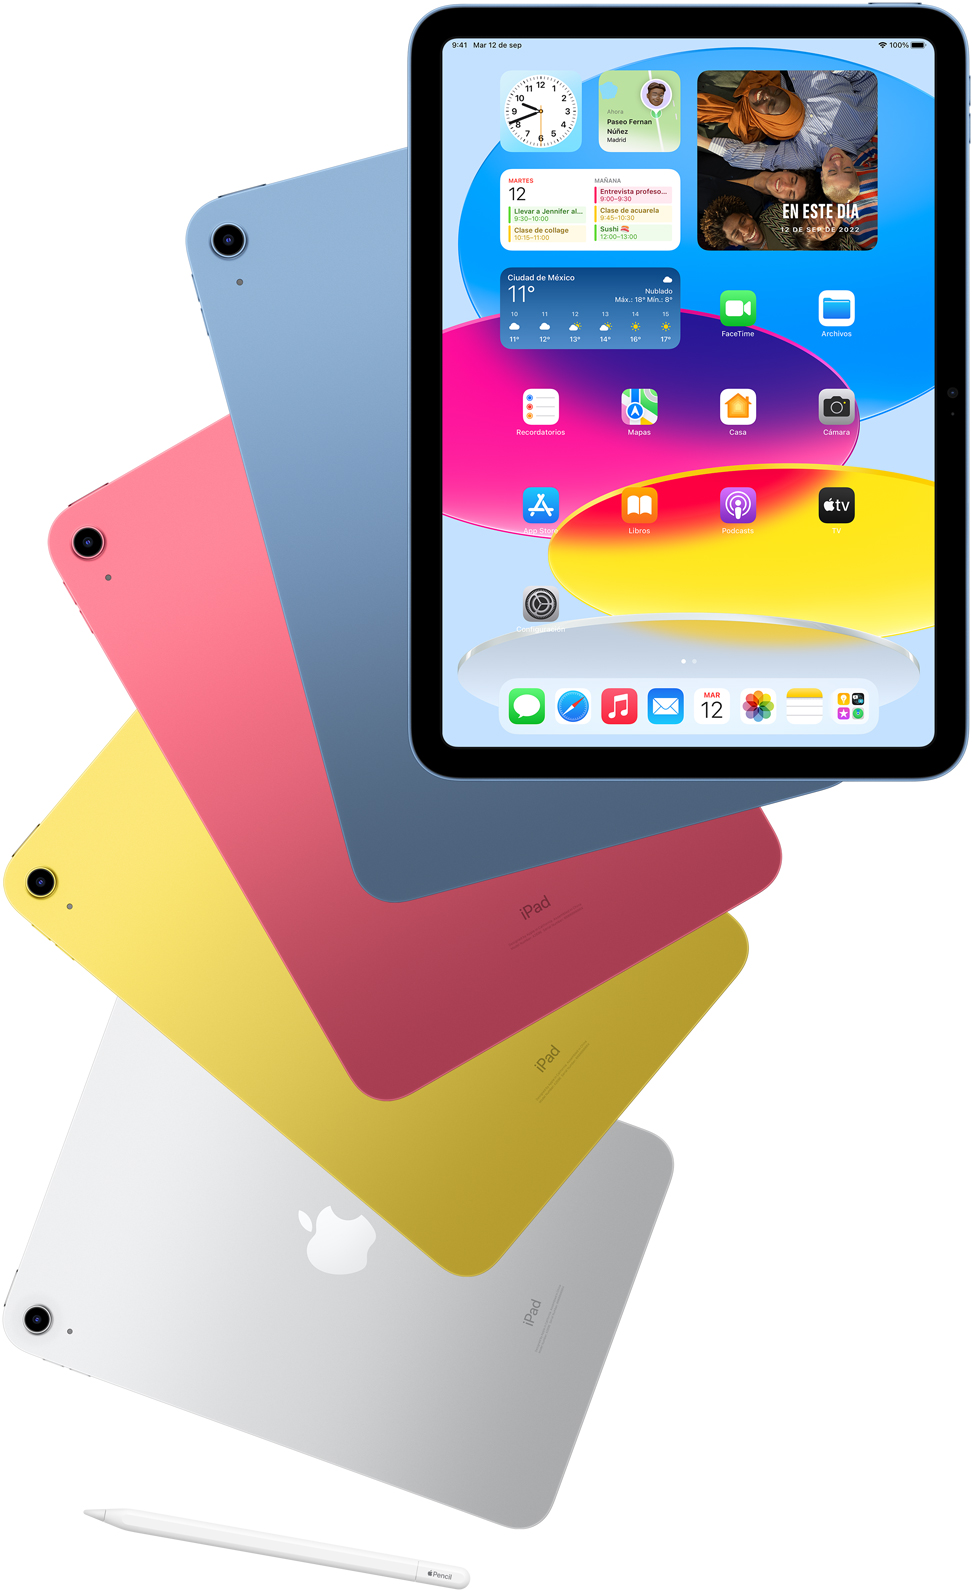 Vista frontal de un iPad con la pantalla de inicio y, por detrás, otros dispositivos iPad en azul, rosa, amarillo y color plata. Se muestra un Apple Pencil cerca de los distintos modelos de iPad.